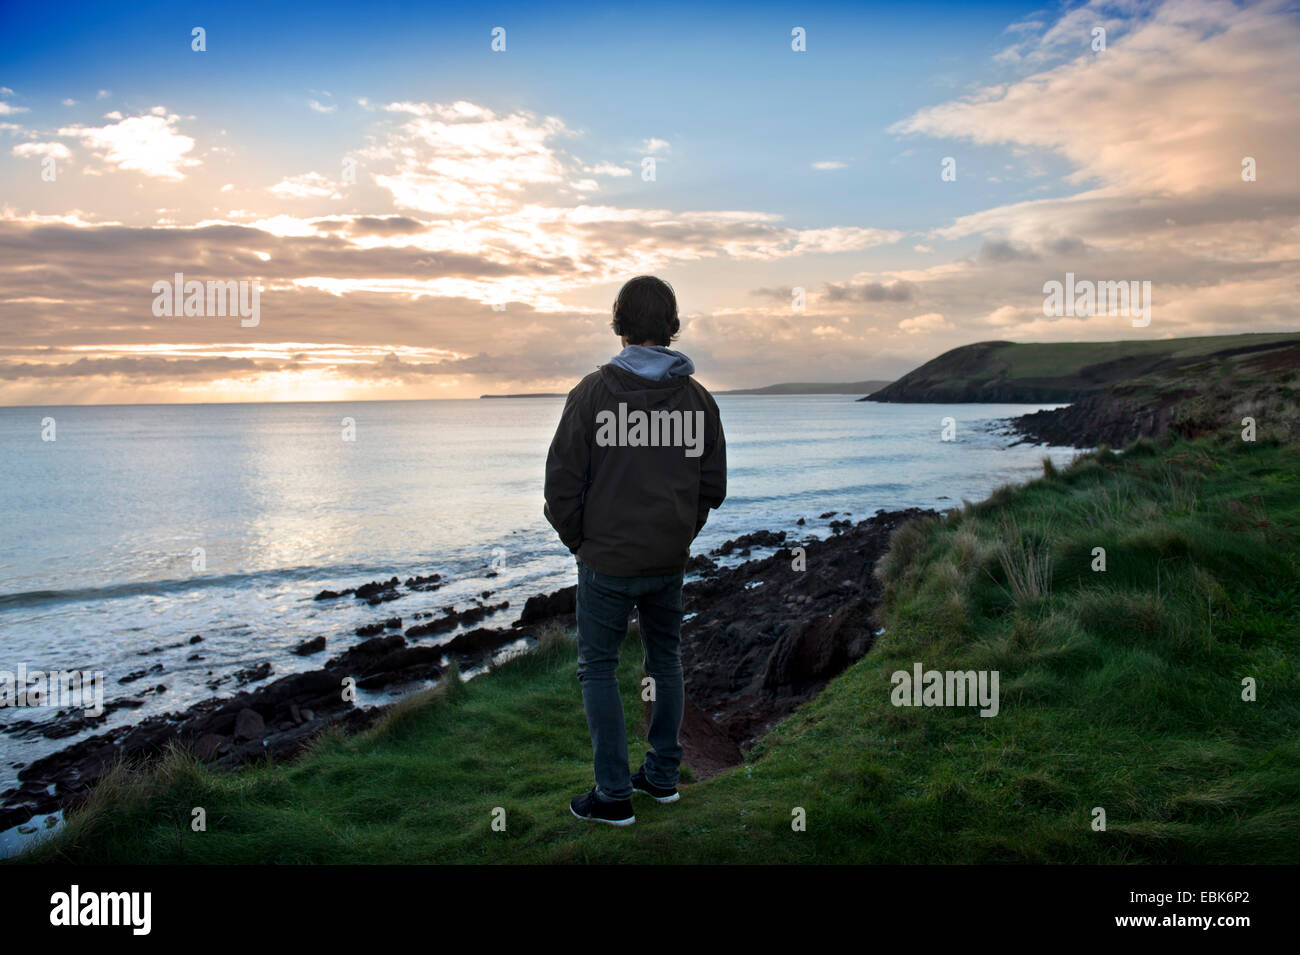 Un adolescent écoute son iPod tout en regardant la vue sur la baie de Tenby Tenby dans près de Pembrokeshire, Pays de Galles UK Banque D'Images